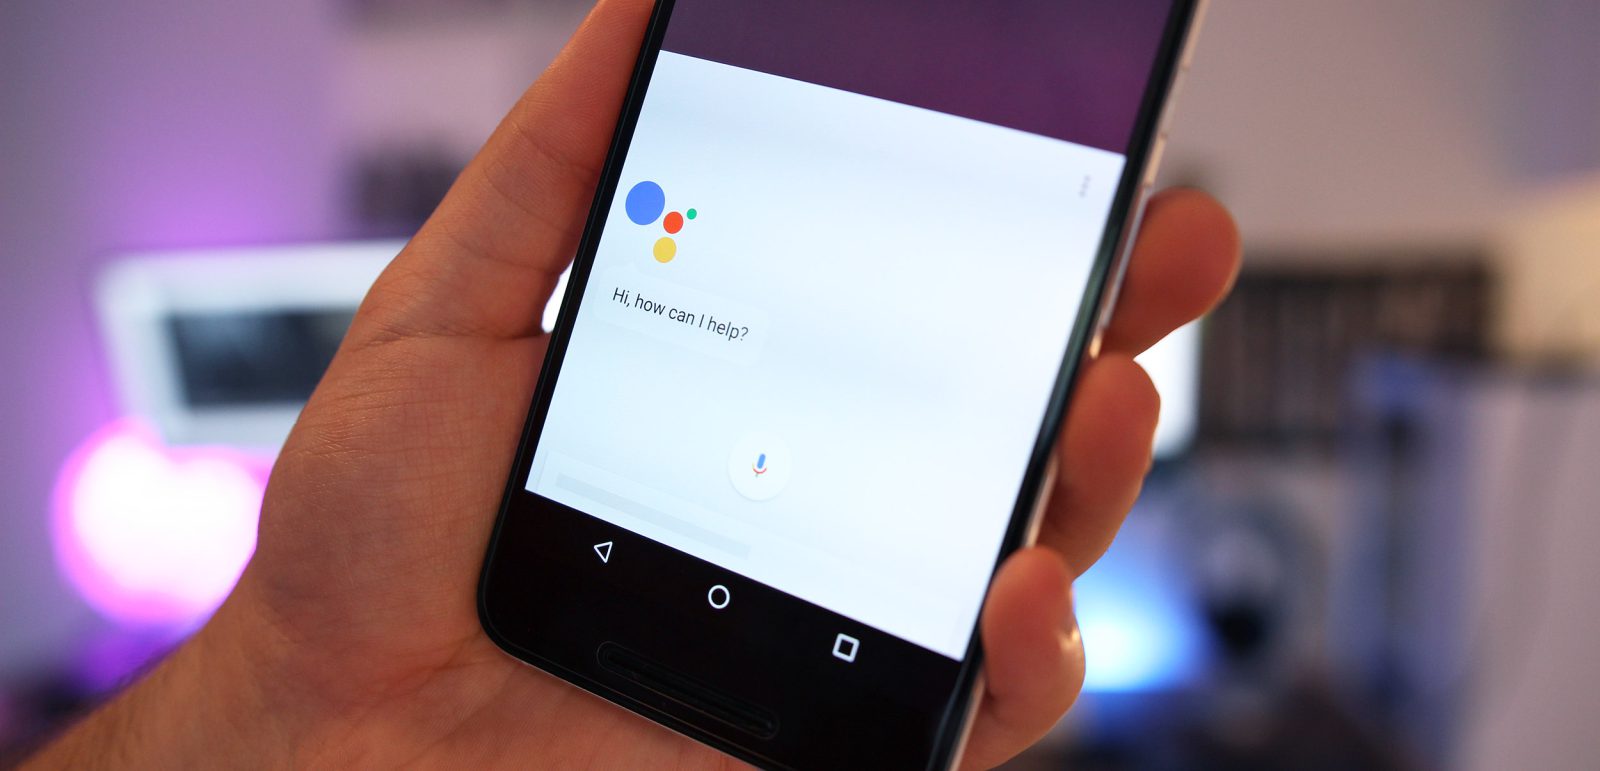 هاتف LG G6 قد يأتي مدمجا بمساعد جوجل Google Assistant الجديد 3